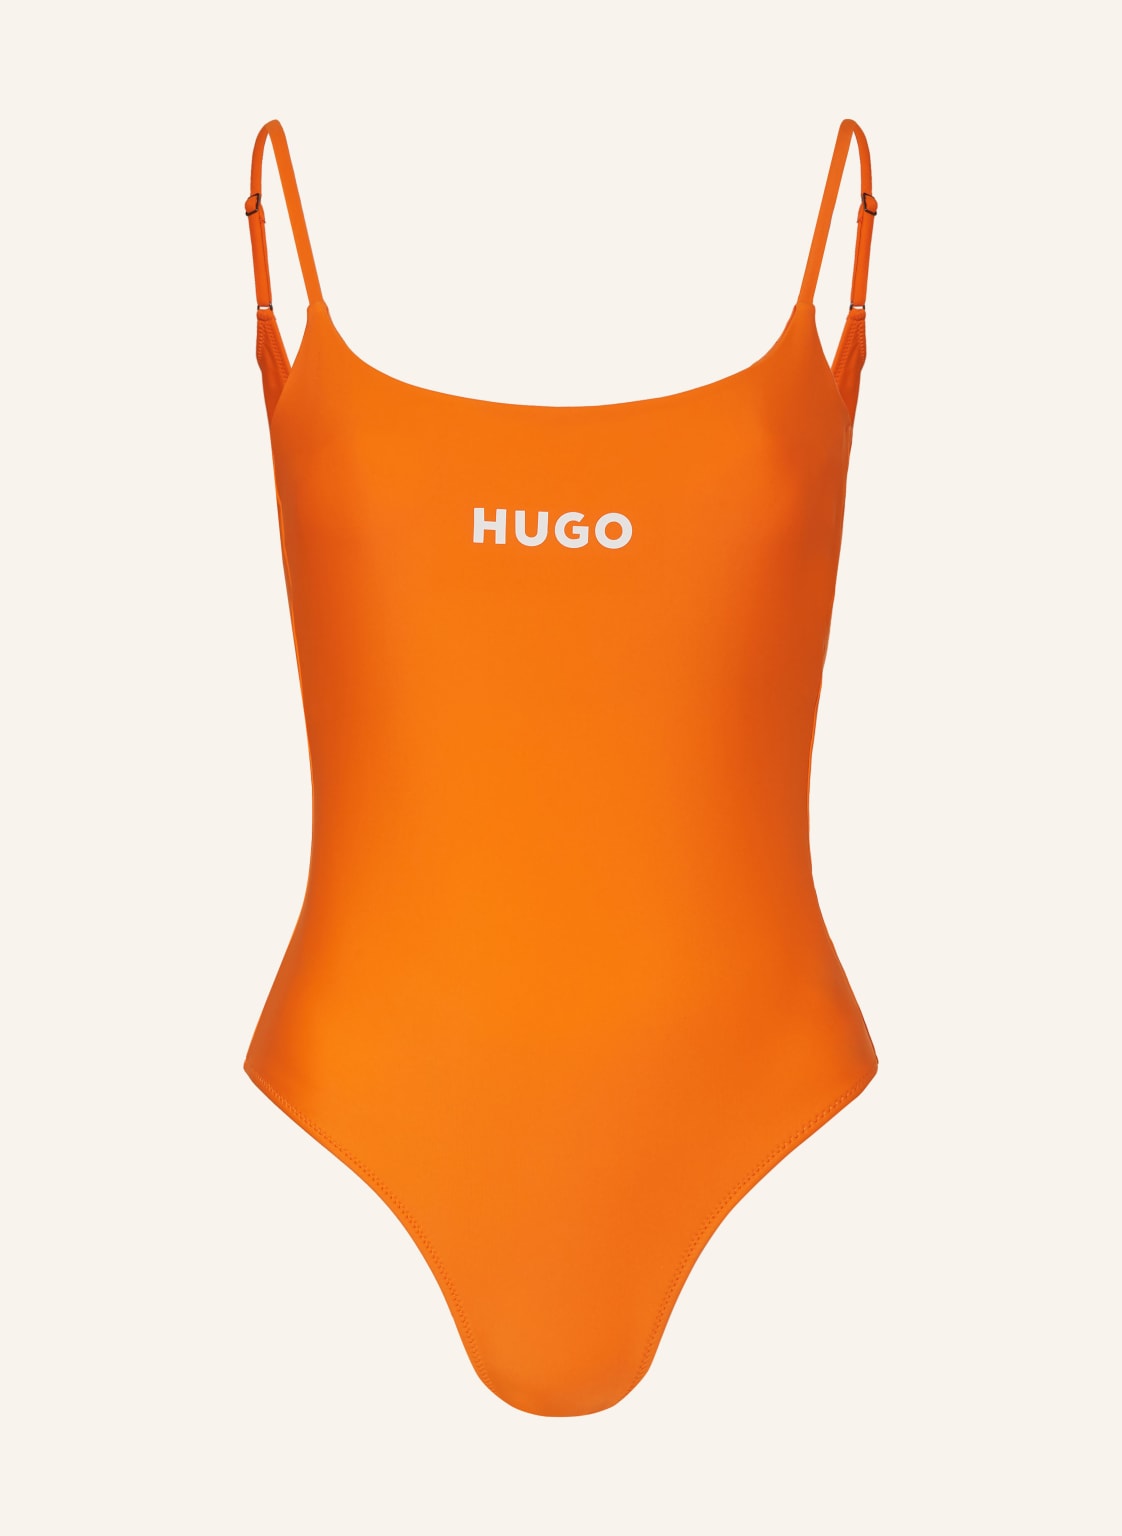 Hugo Badeanzug Pure orange von HUGO